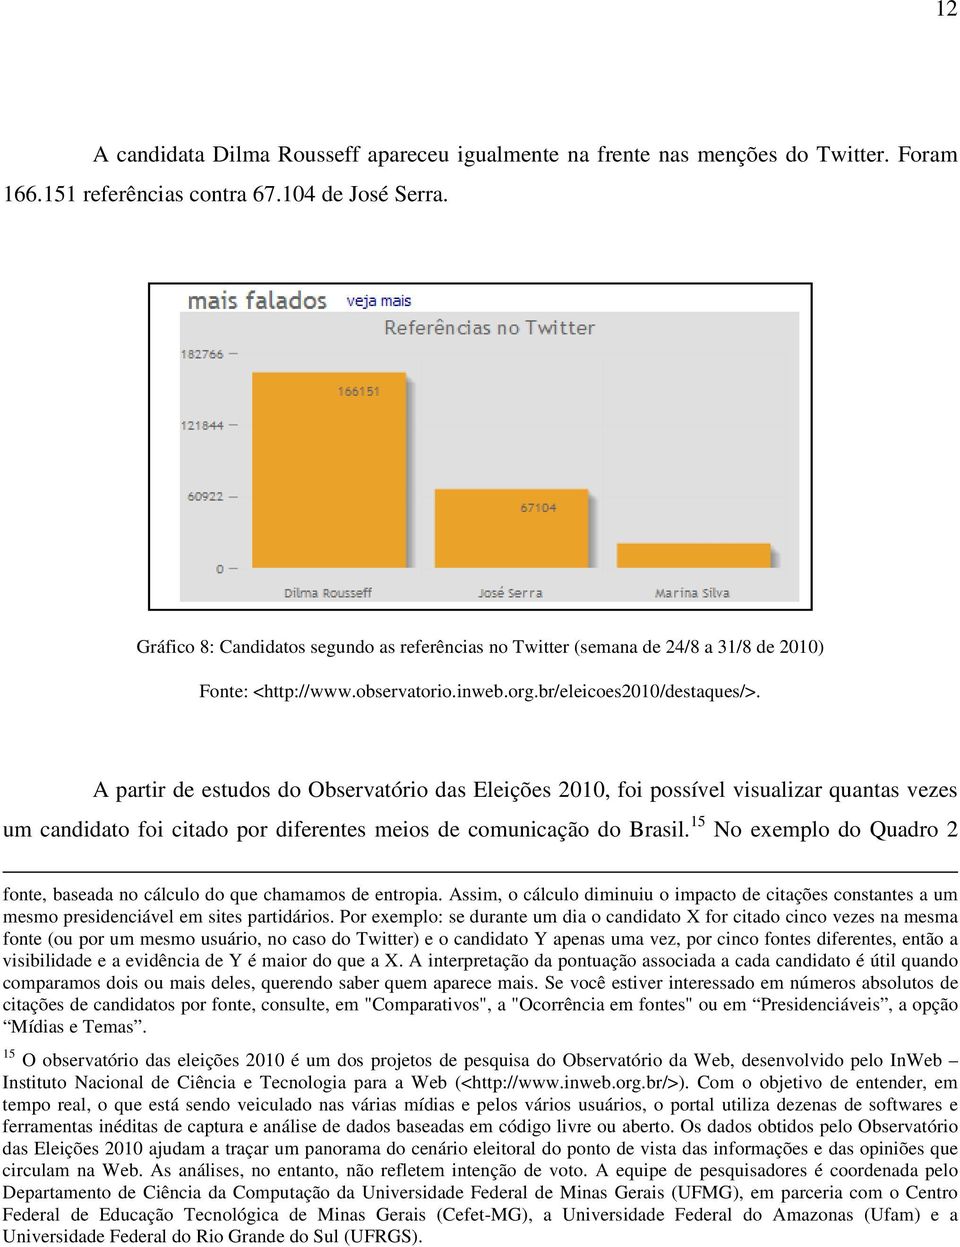 A partir de estudos do Observatório das Eleições 2010, foi possível visualizar quantas vezes um candidato foi citado por diferentes meios de comunicação do Brasil.